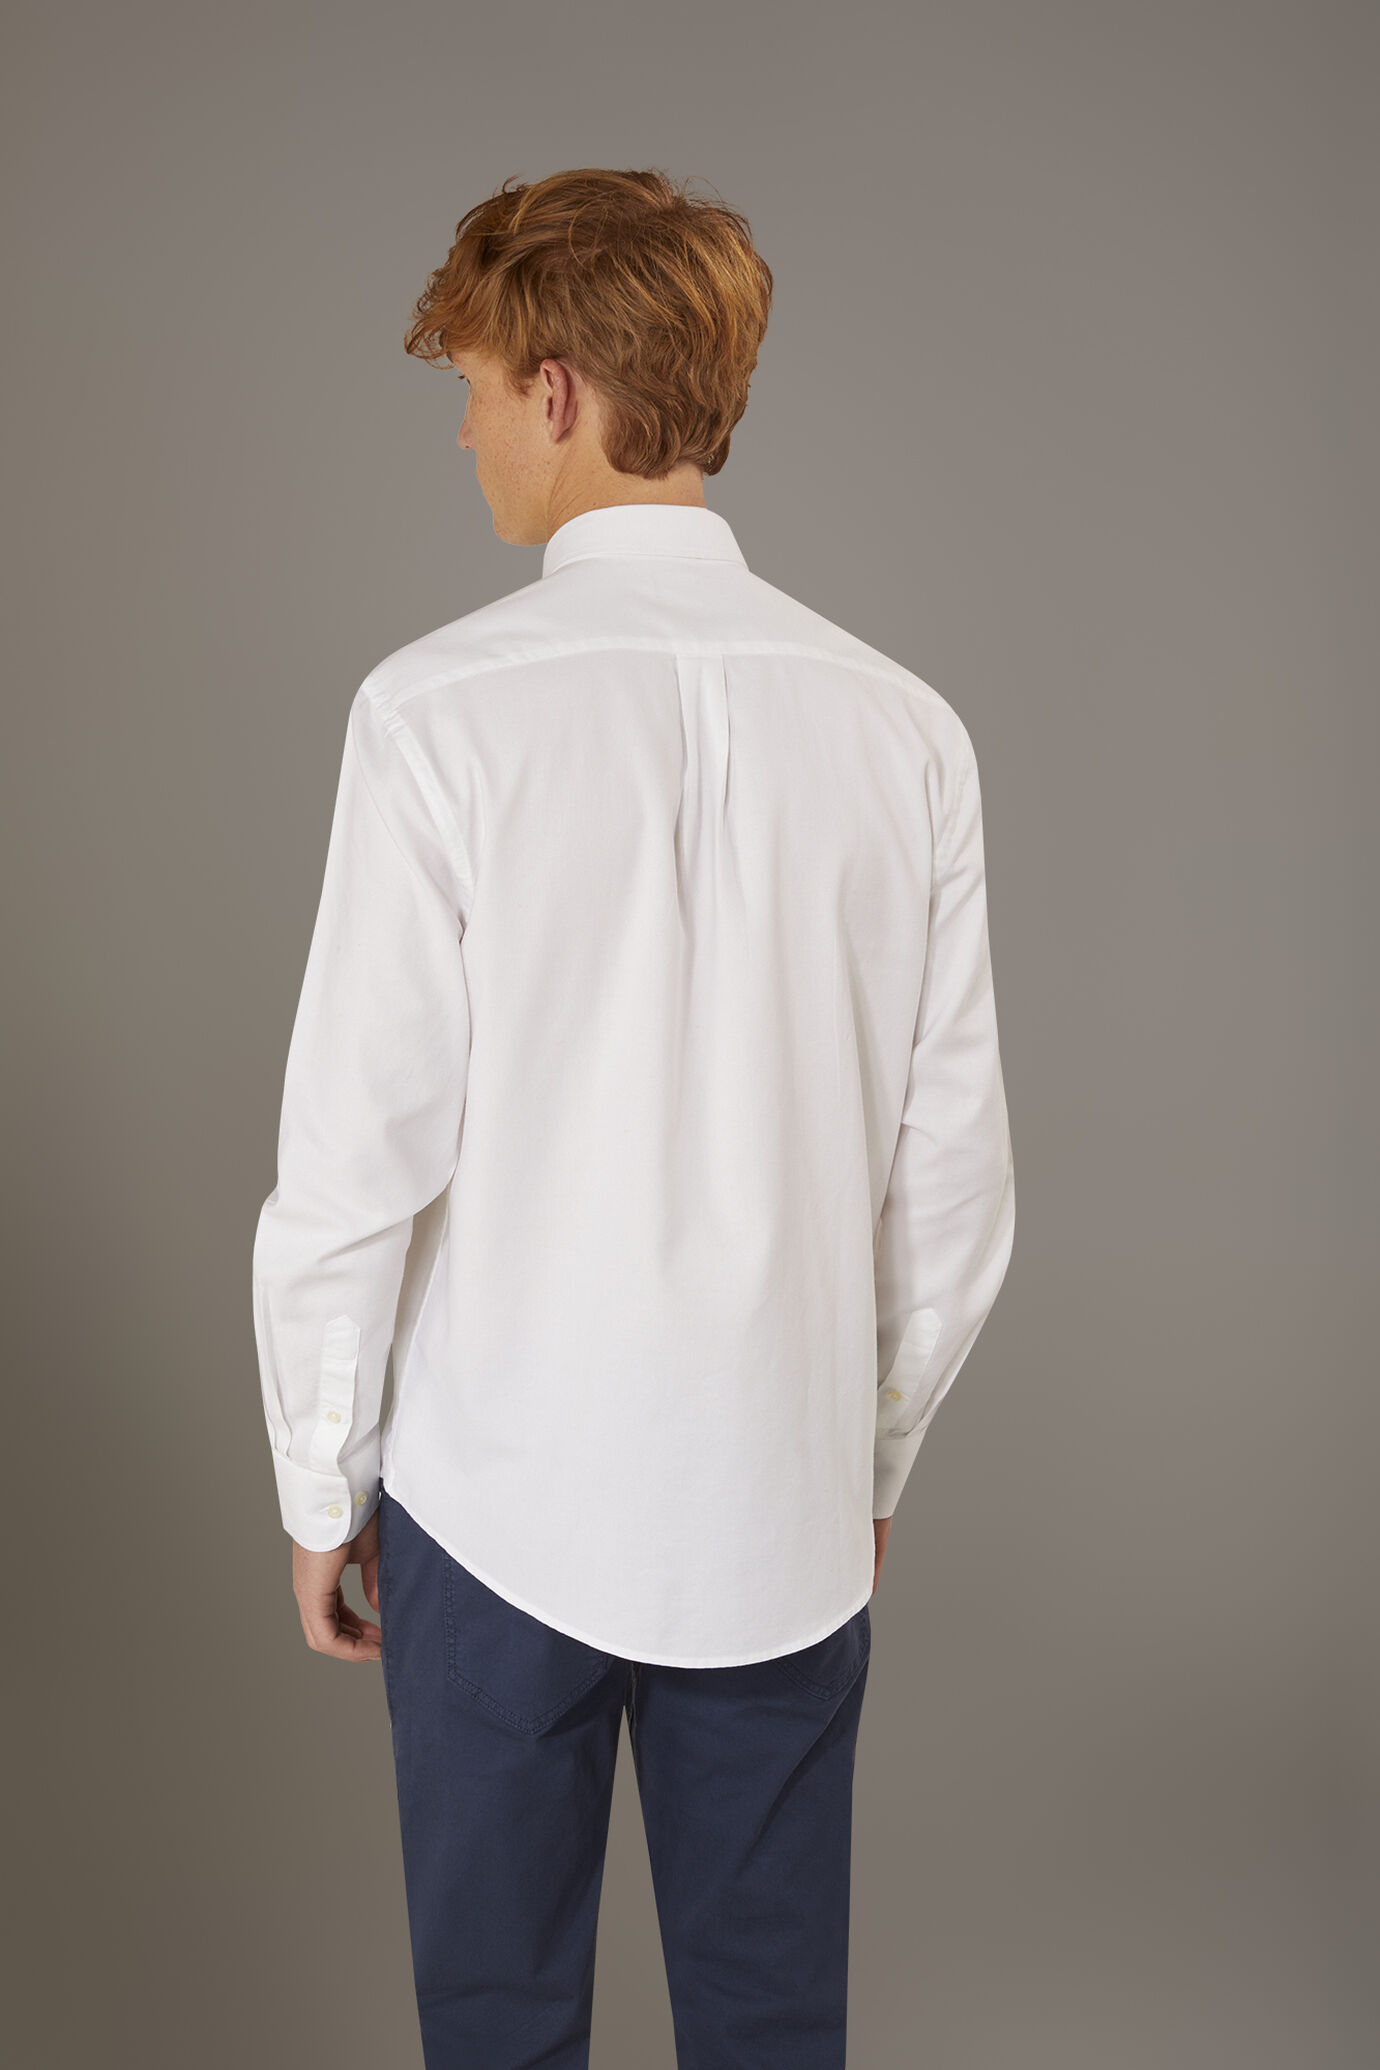 Camicia lavata button down comfort fit tessuto oxford ultra leggero image number 2